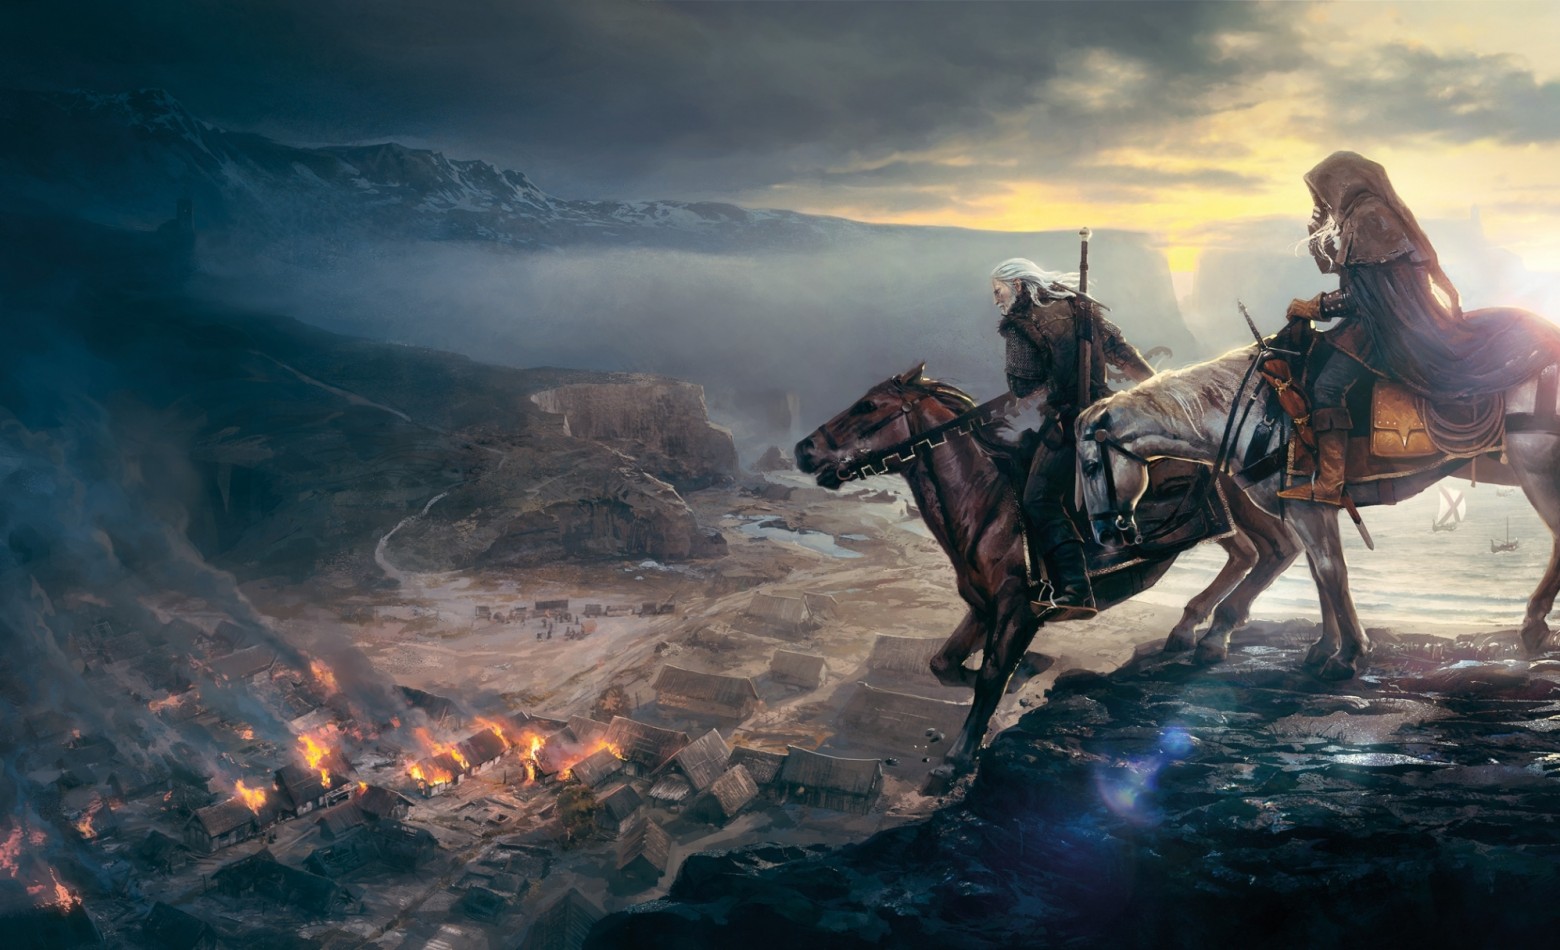 Edição especial de The Witcher 3 chega em fevereiro para PC e consoles